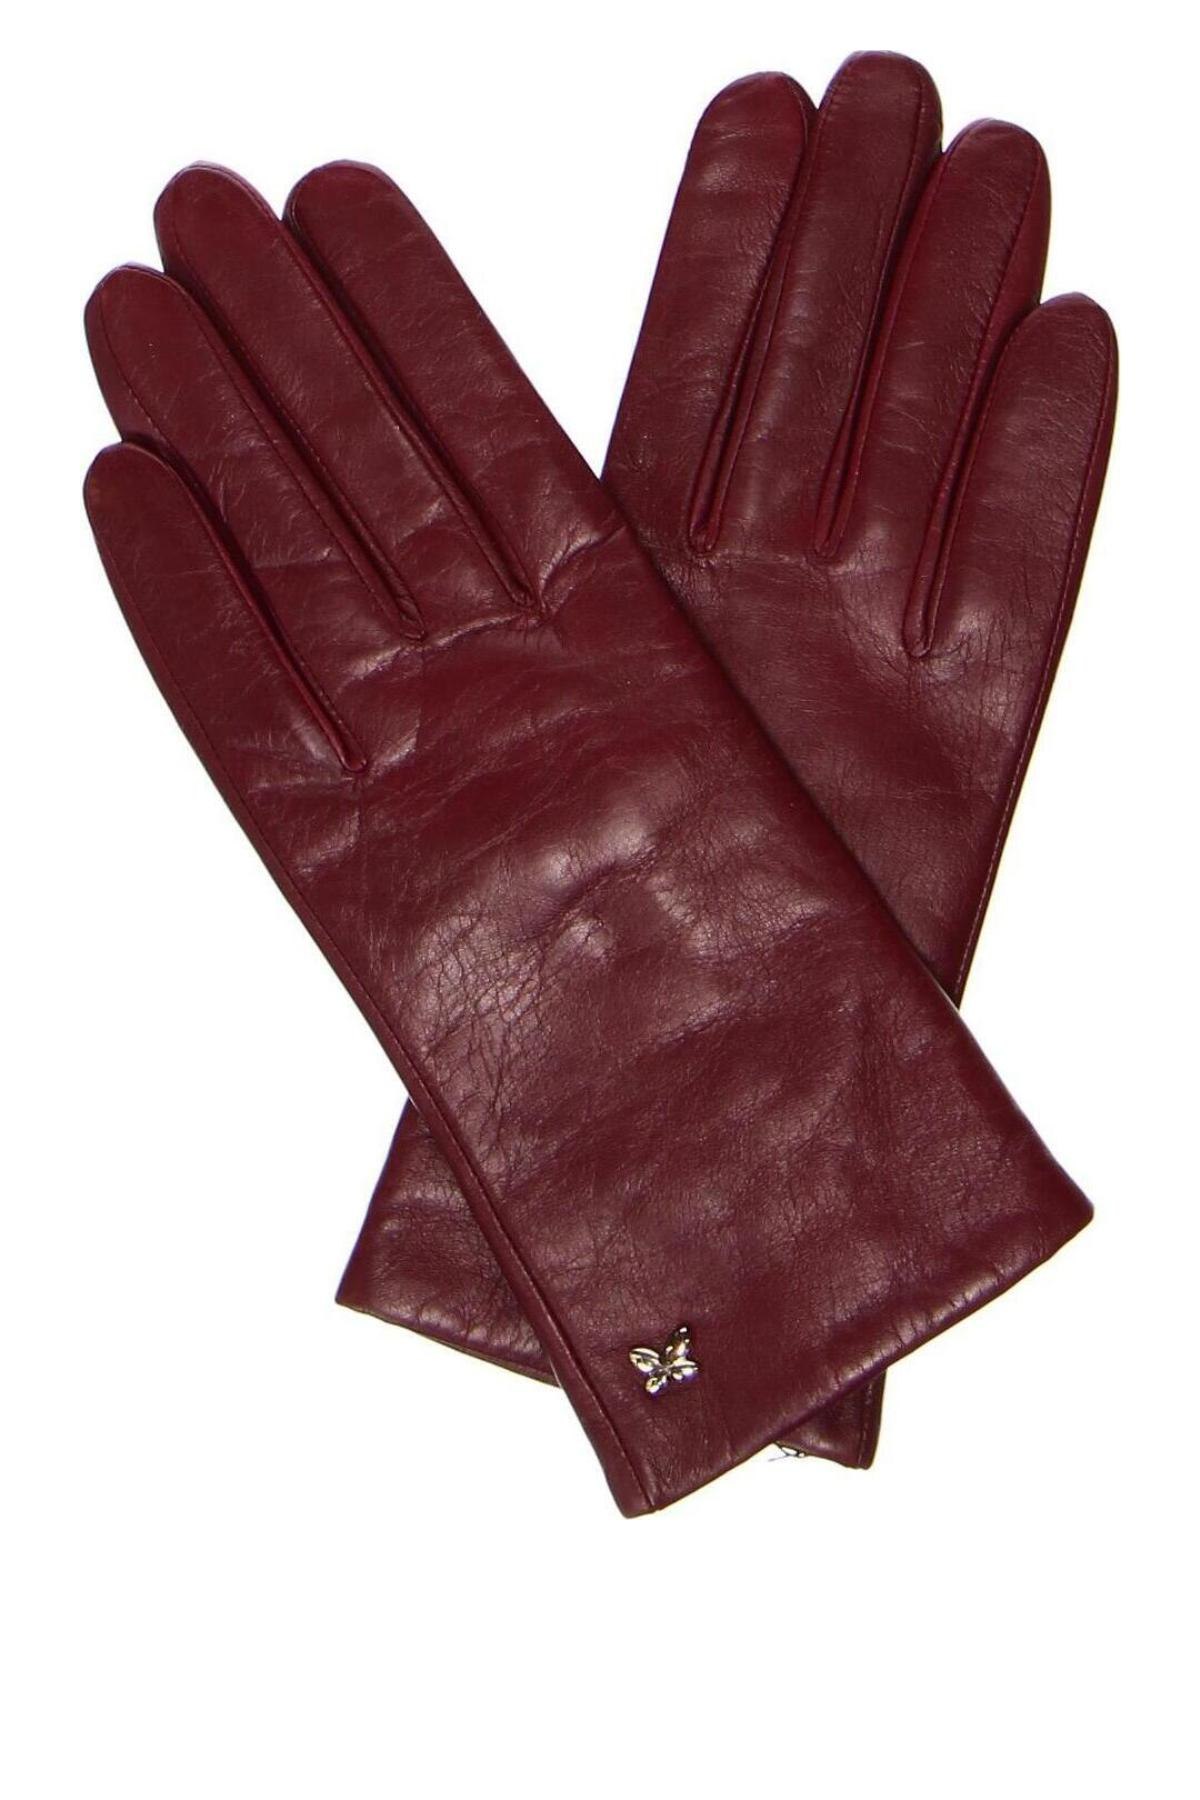 Ръкавици Furla, Цвят Червен, Цена 140,00 лв.